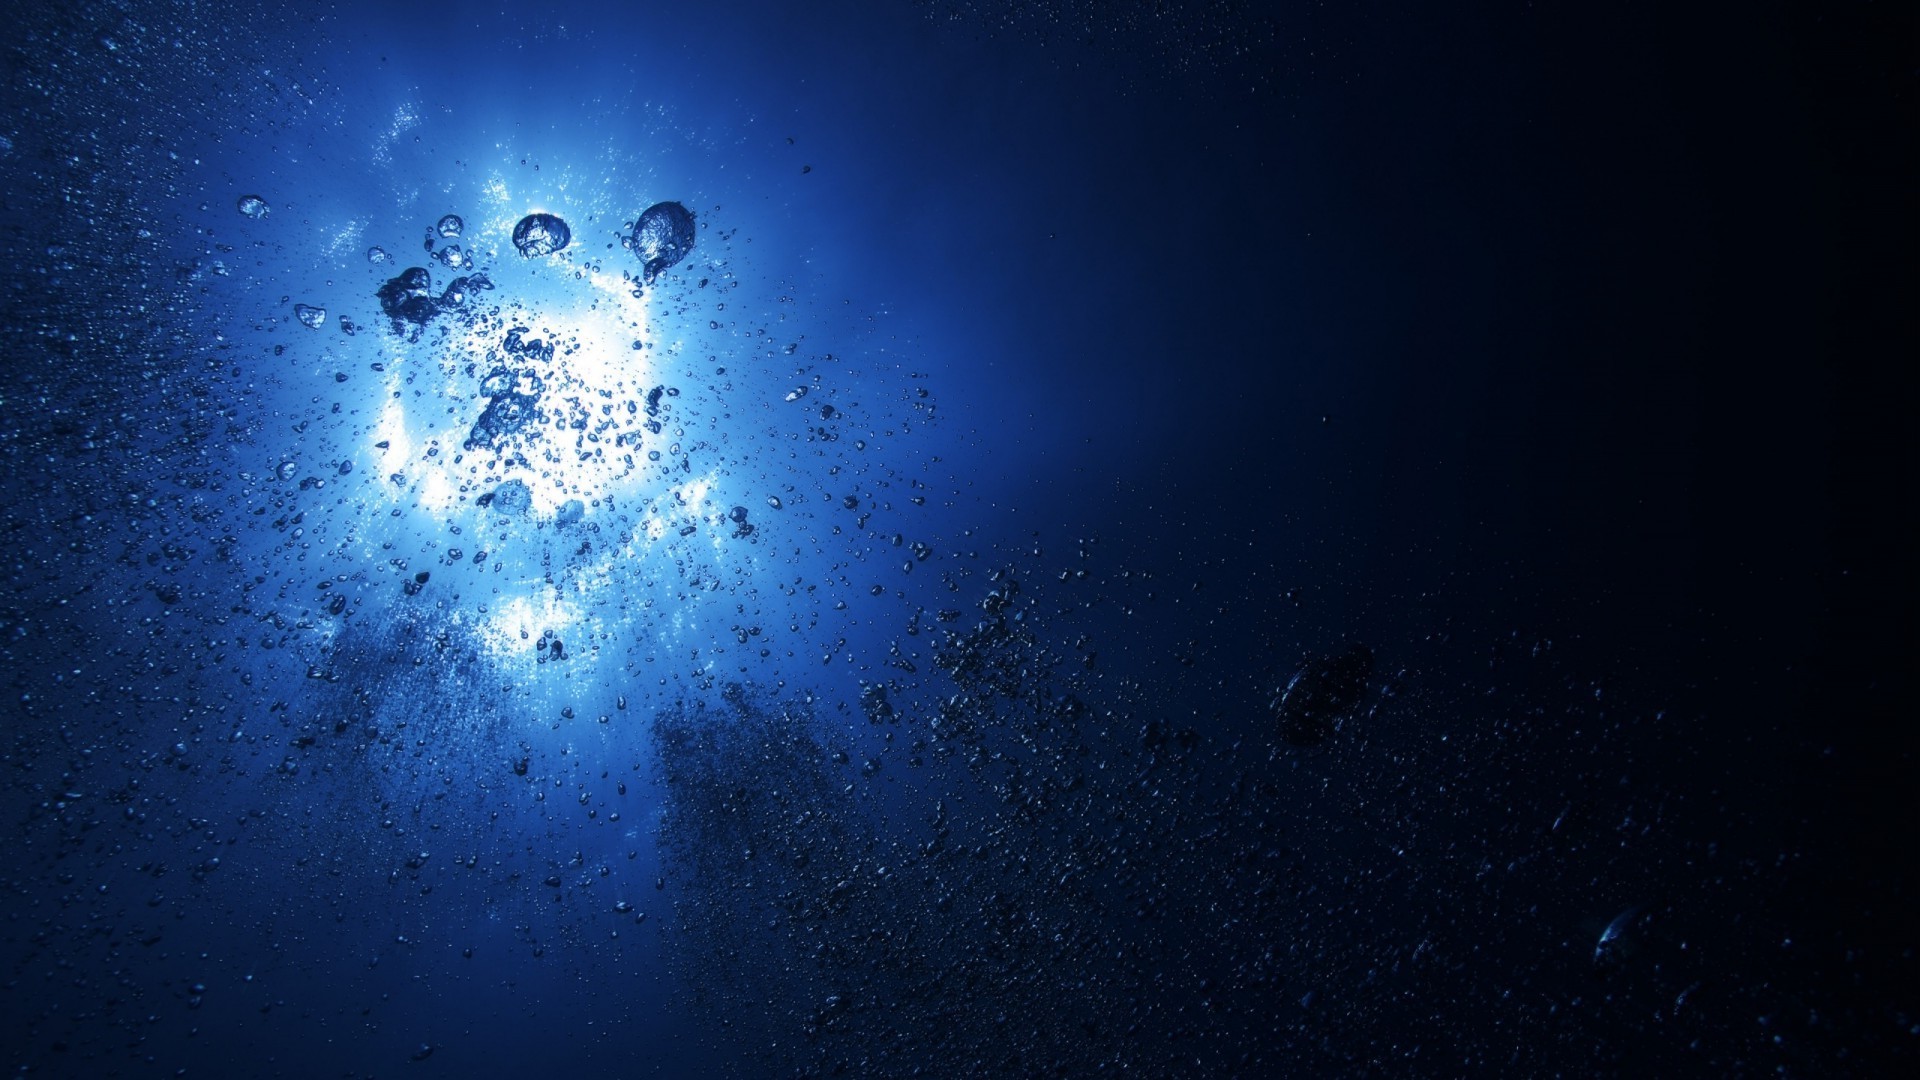 вода луна астрономия подводный рабочего стола пузырь темный пространство холодная дождь свет зима аннотация планеты небо погода природа разведка